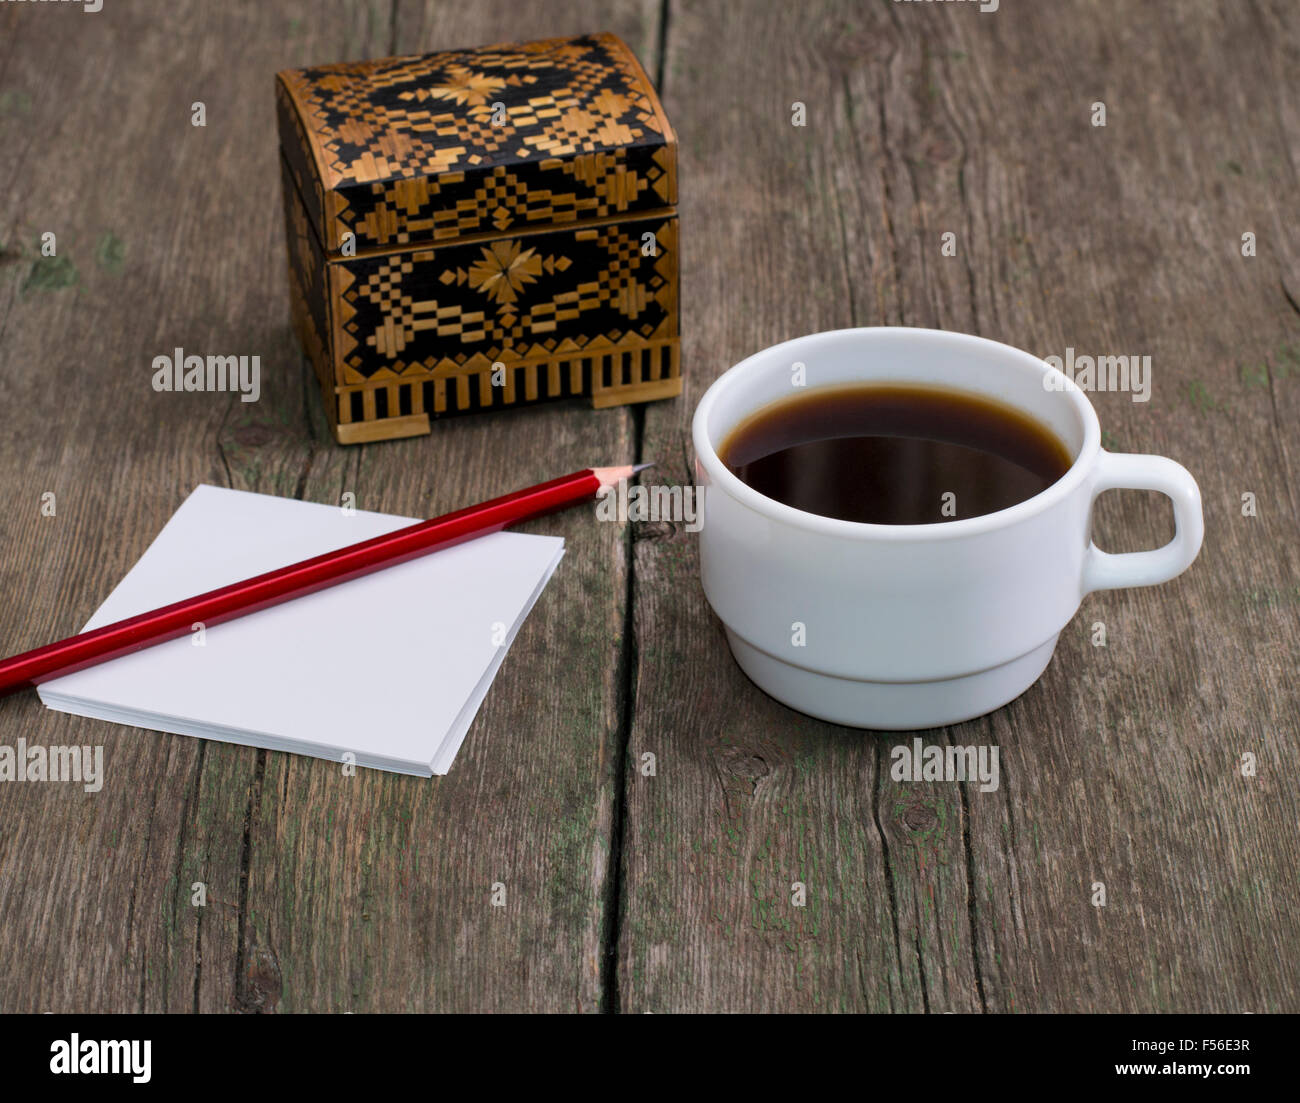 Tasse de café, un crayon à papier et d'un cercueil, une nature morte Banque D'Images